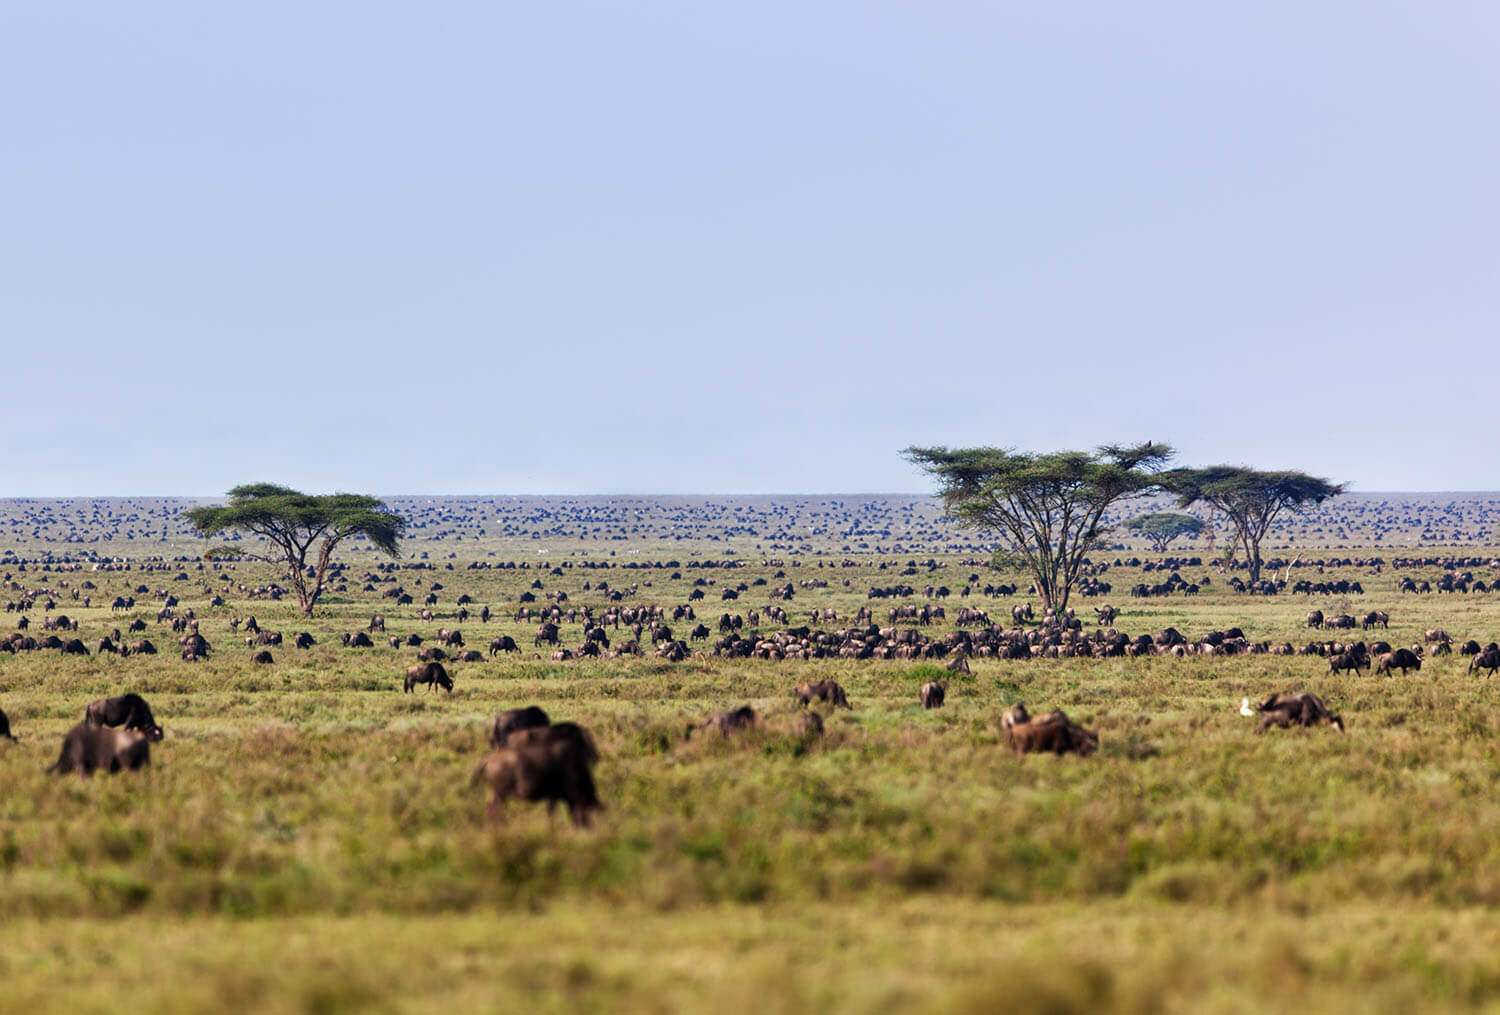 Wildebeests in open plains